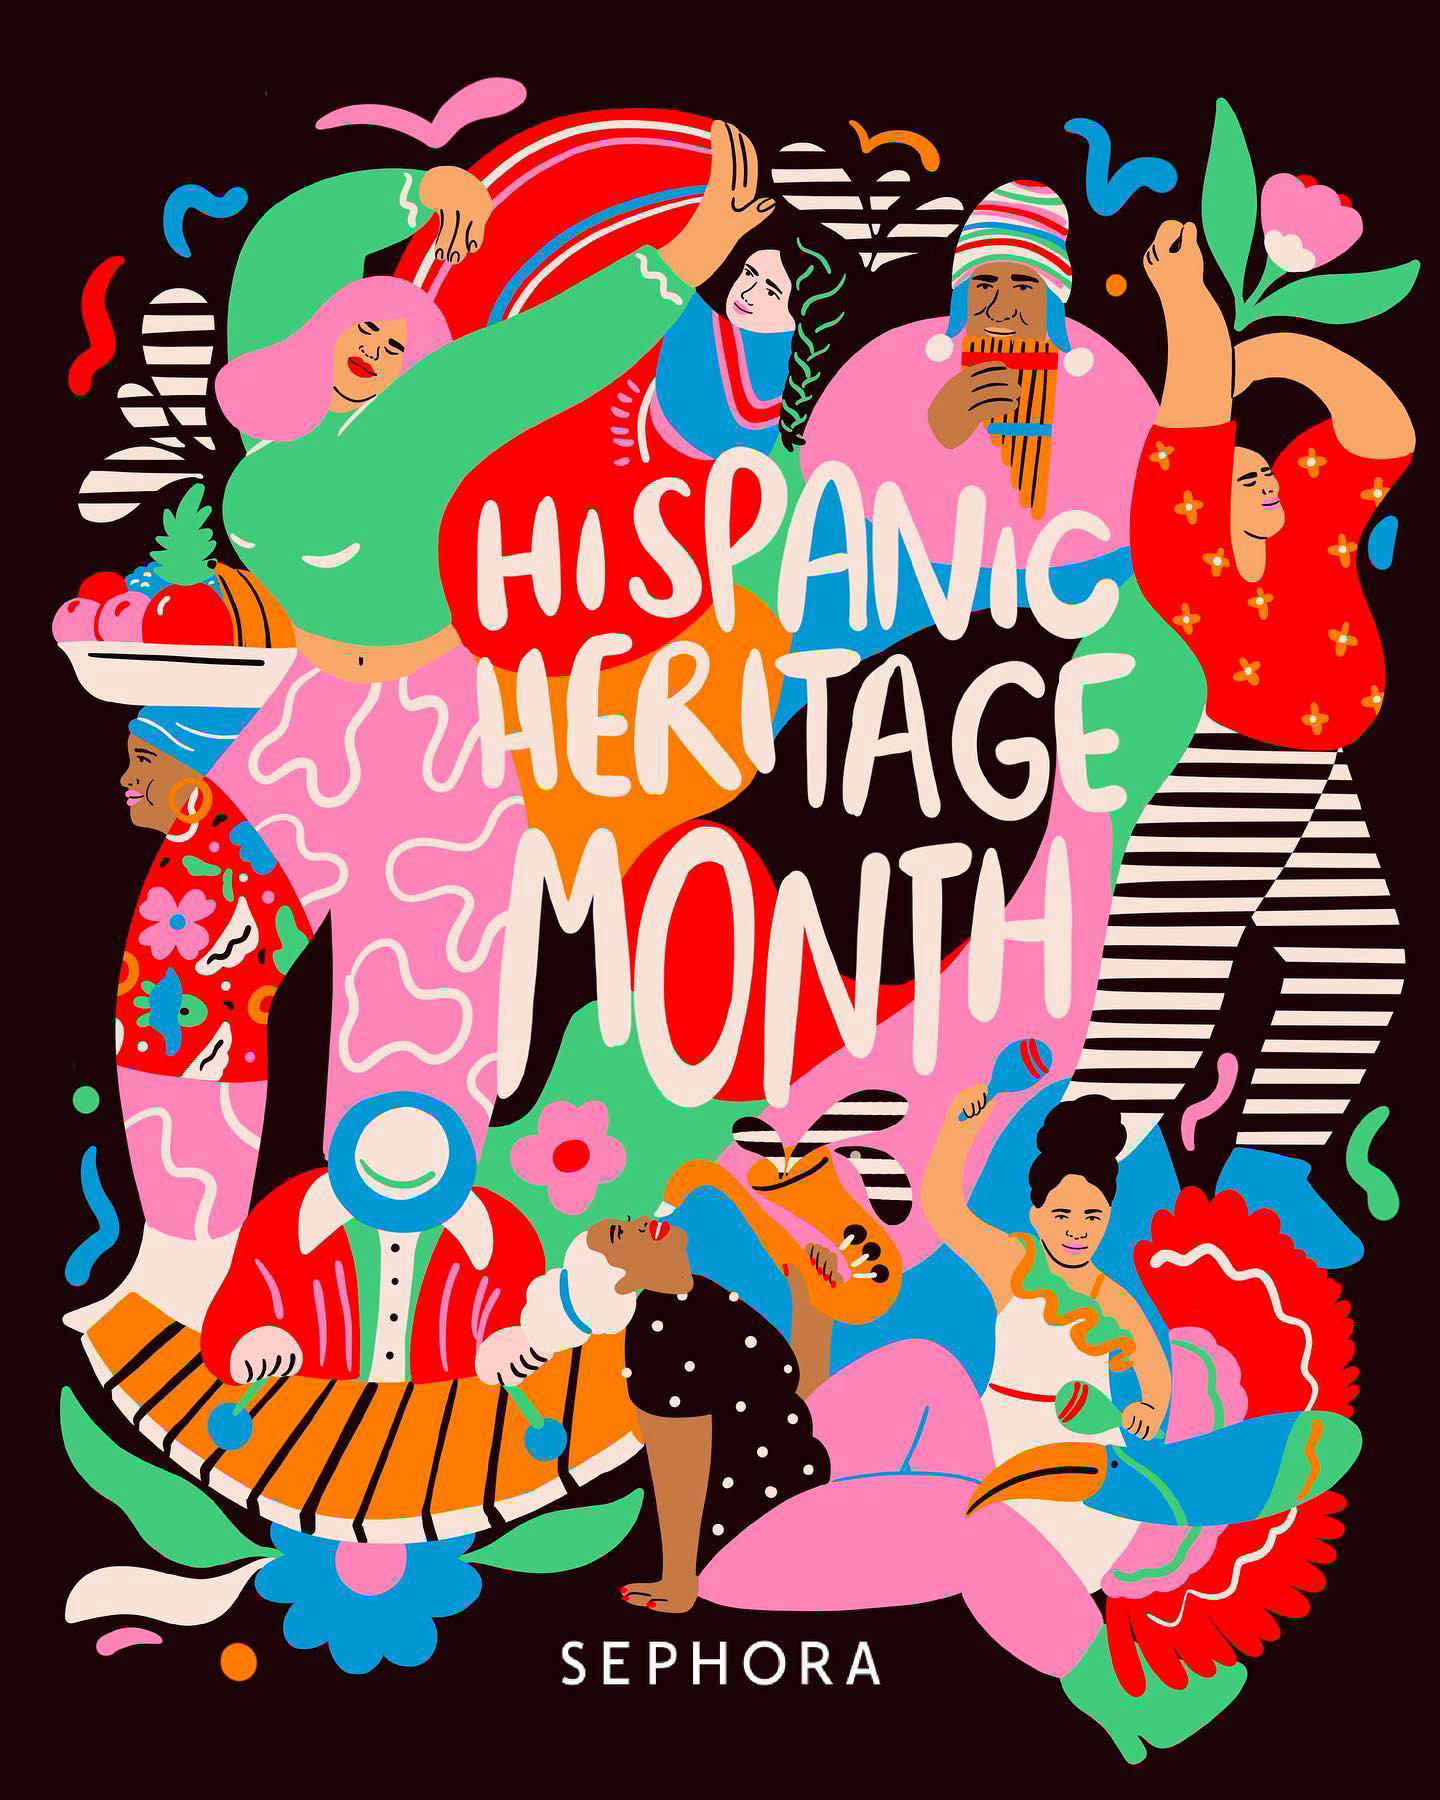 Sephora - Happy Hispanic and Latinx Heritage Month